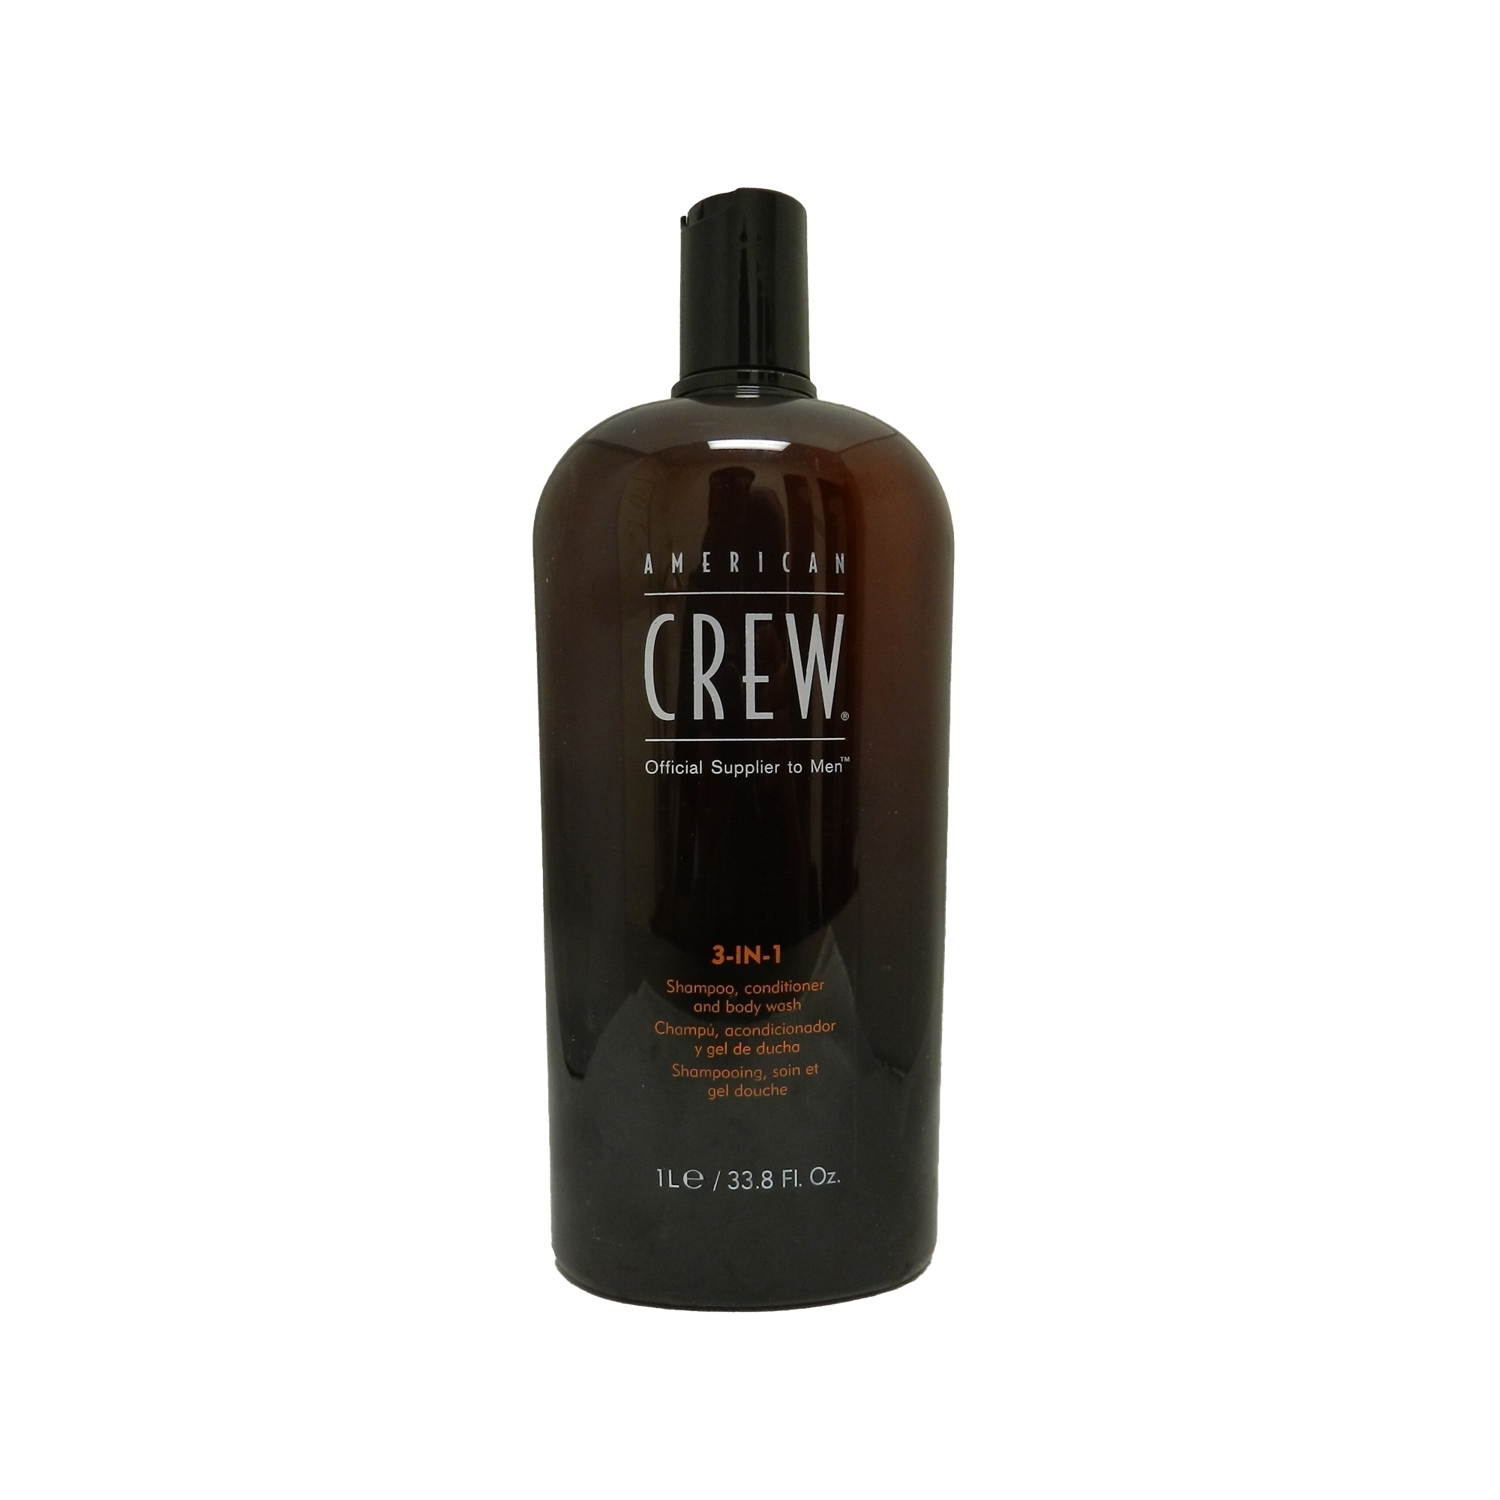 American Crew Erkeklere Özel 3'ü 1 Arada Şampuan + Saç Kremi + Duş Jeli 1000ml